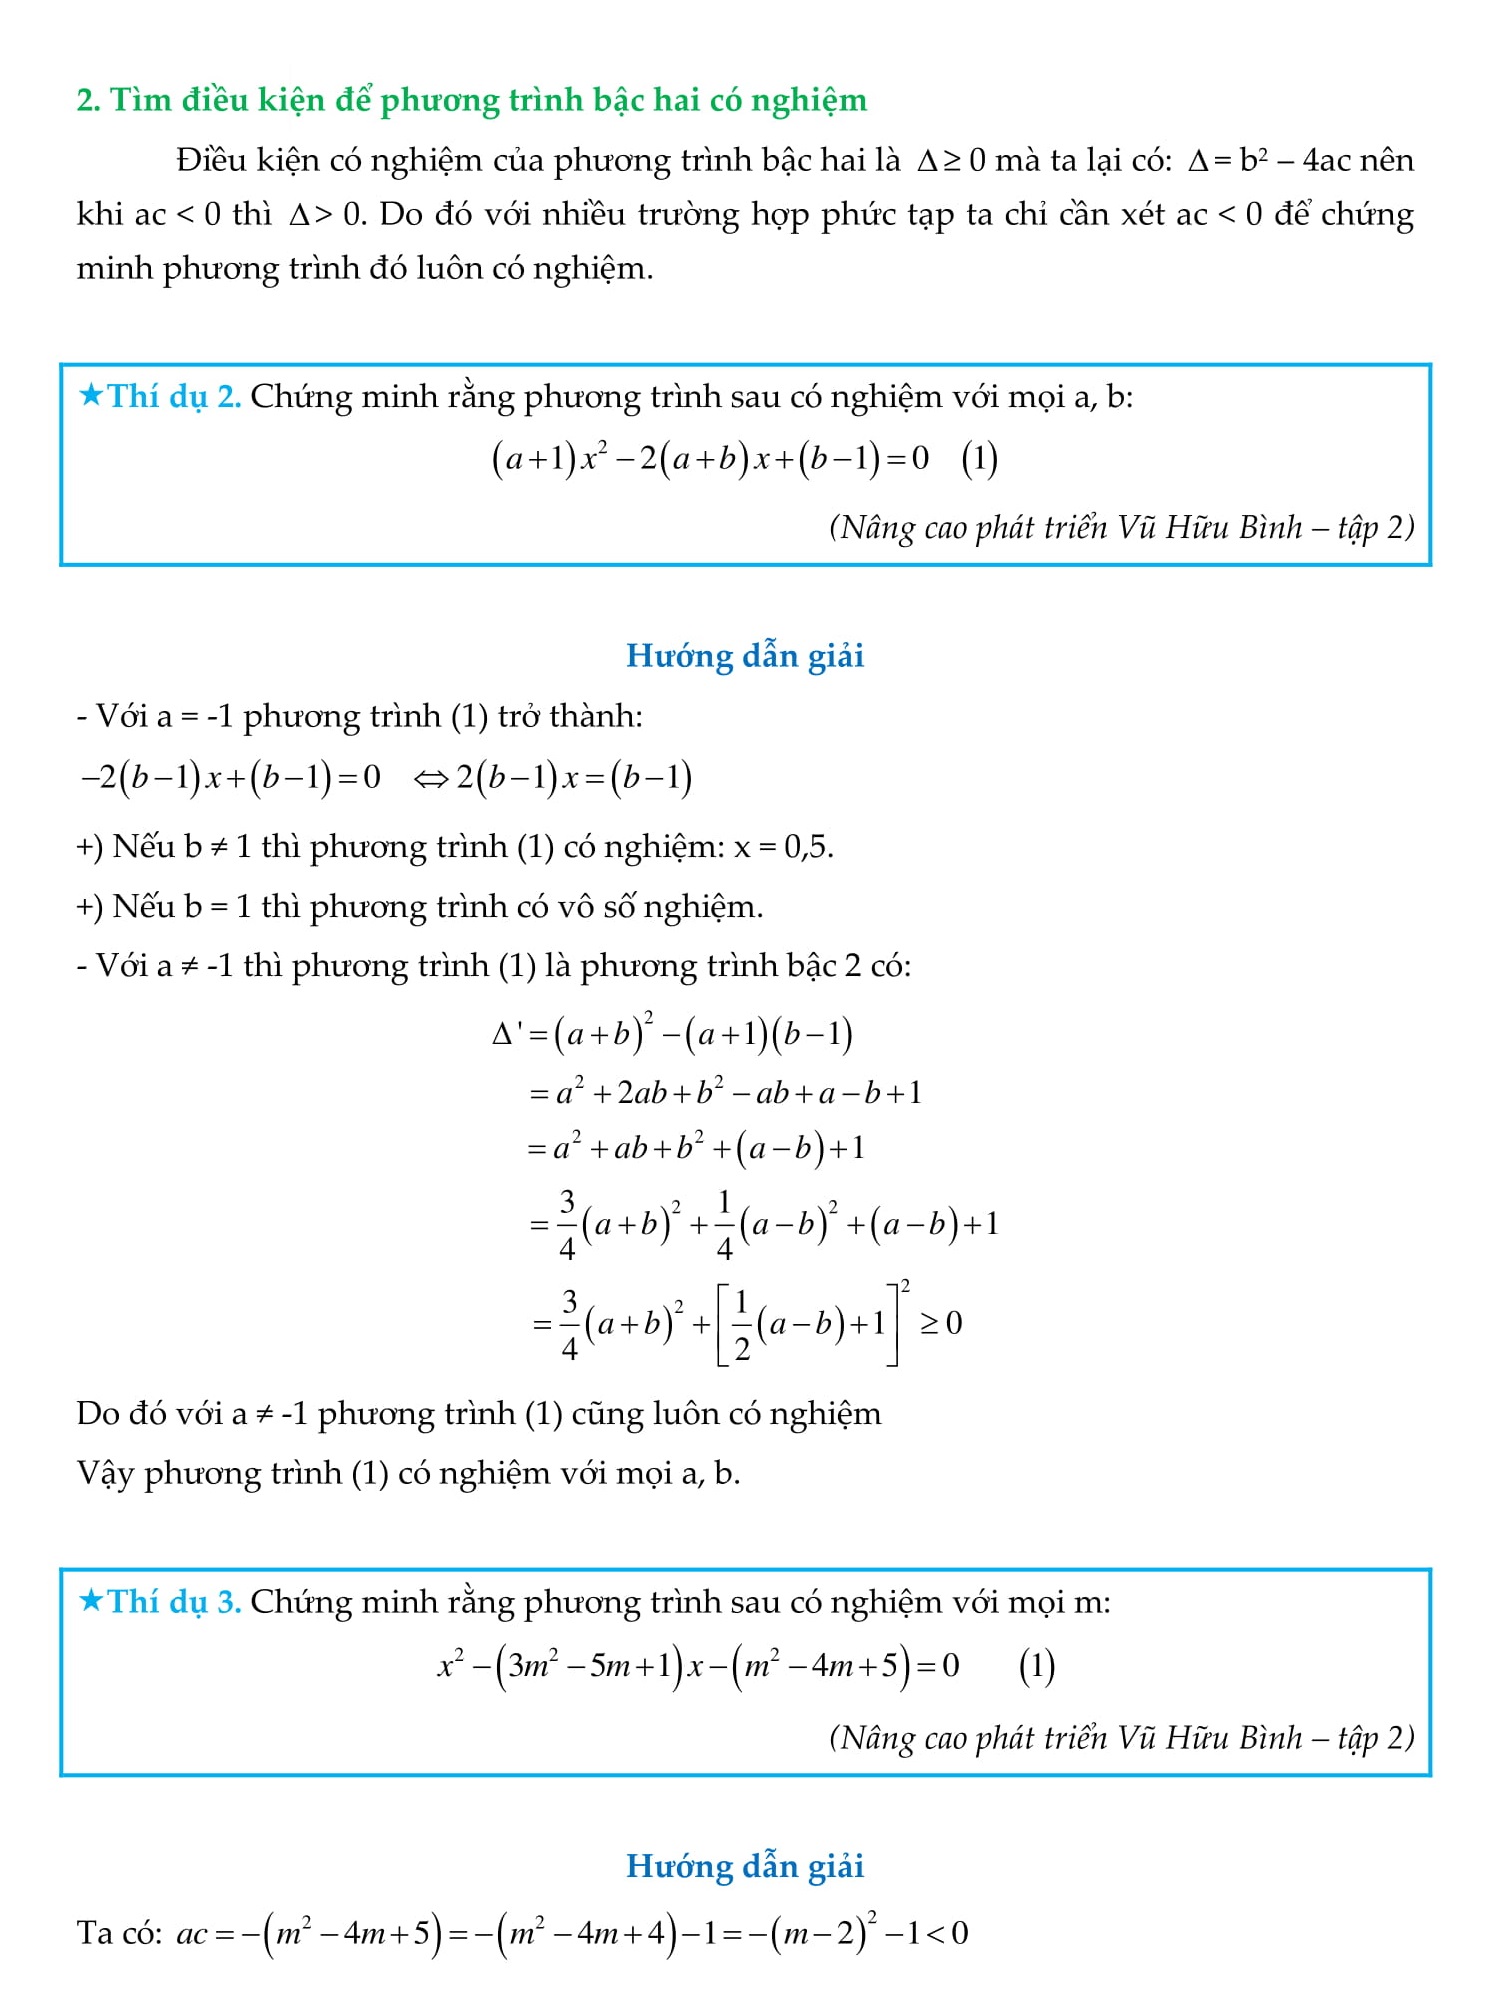 Chuyên đề Phương trình bậc hai - Toán 9